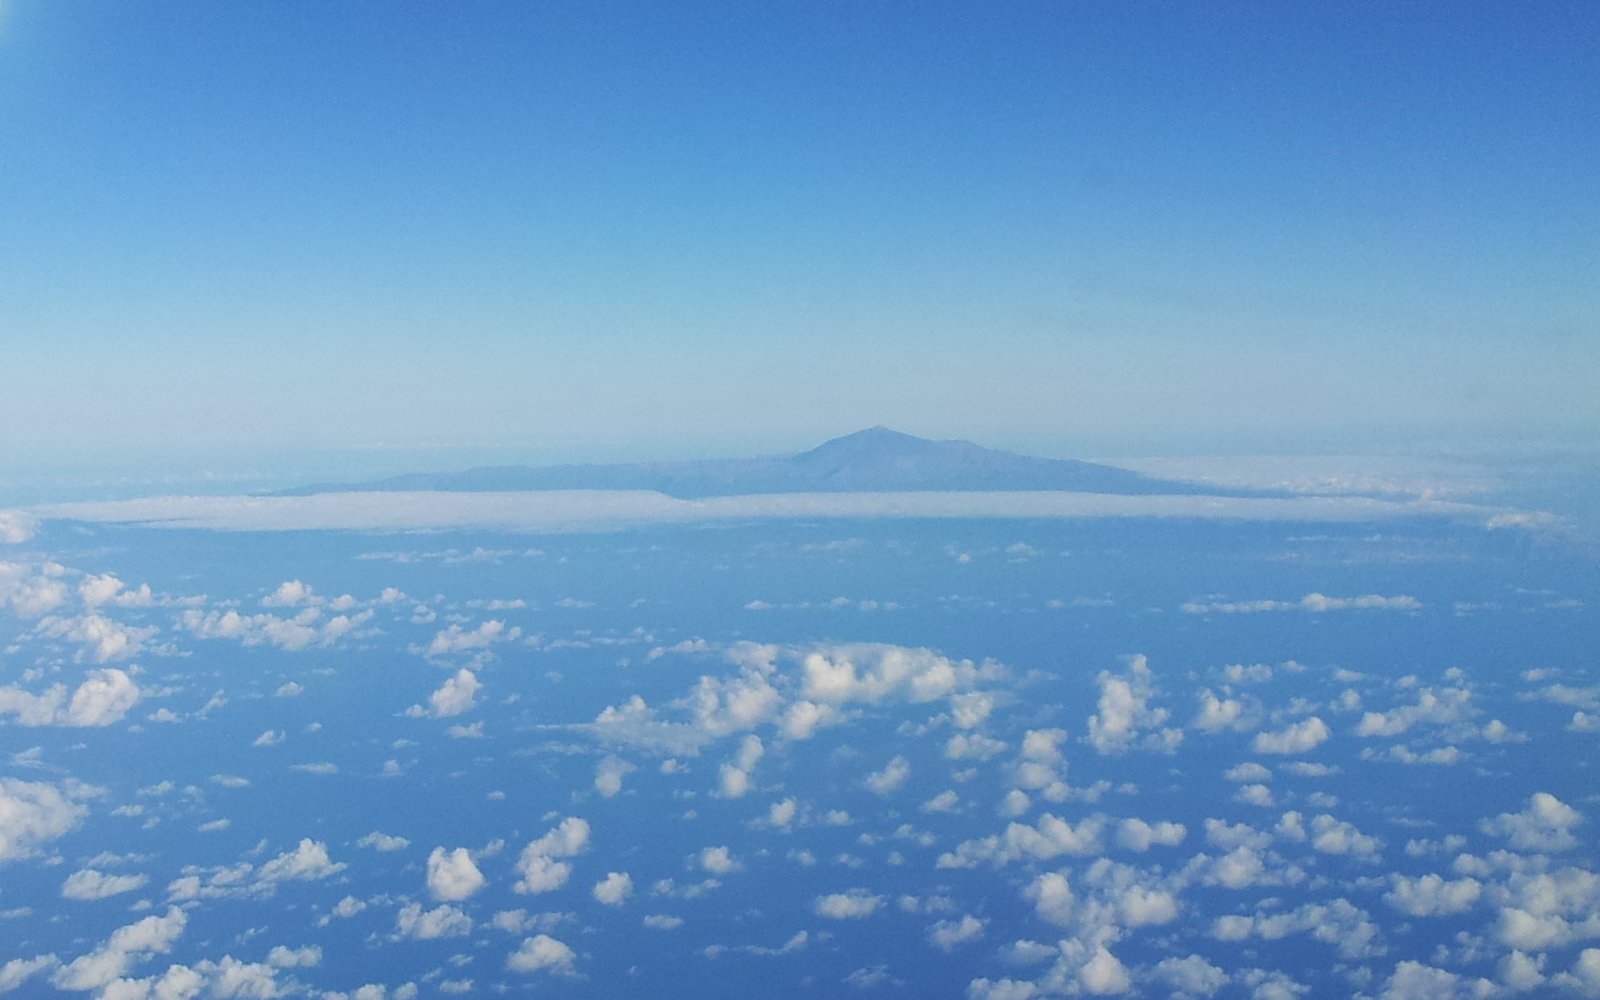 Volcano El Teide Tenerife